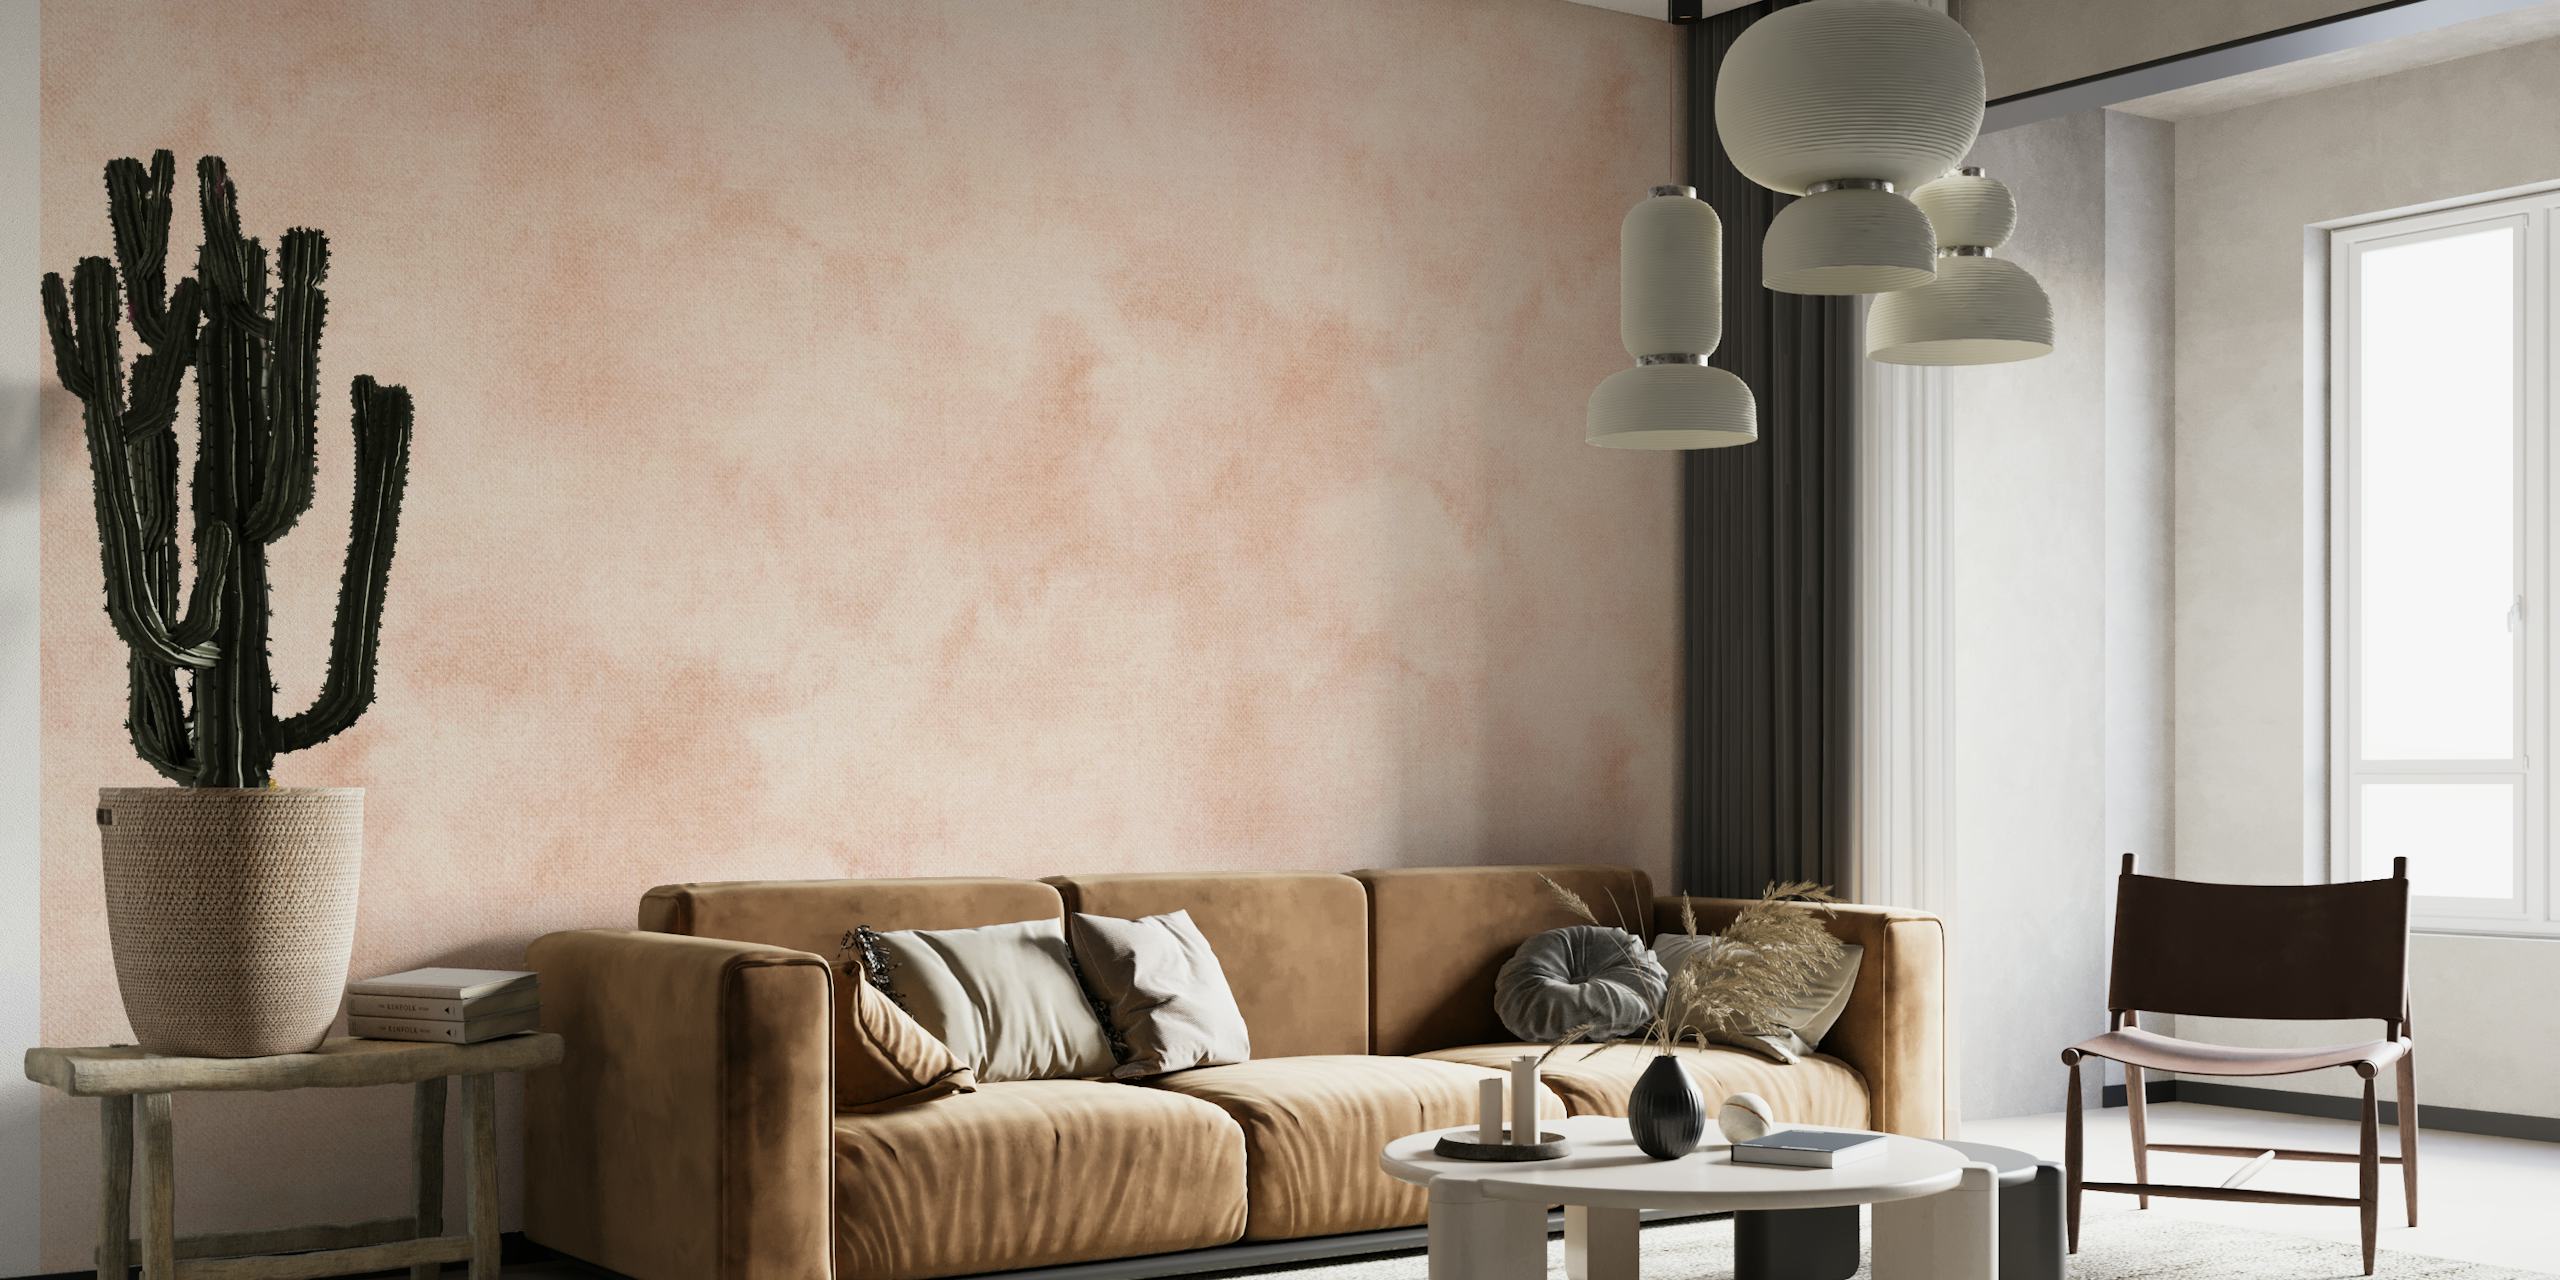 Nøytral sienna og rosa boho abstrakt akvarell veggmaleri